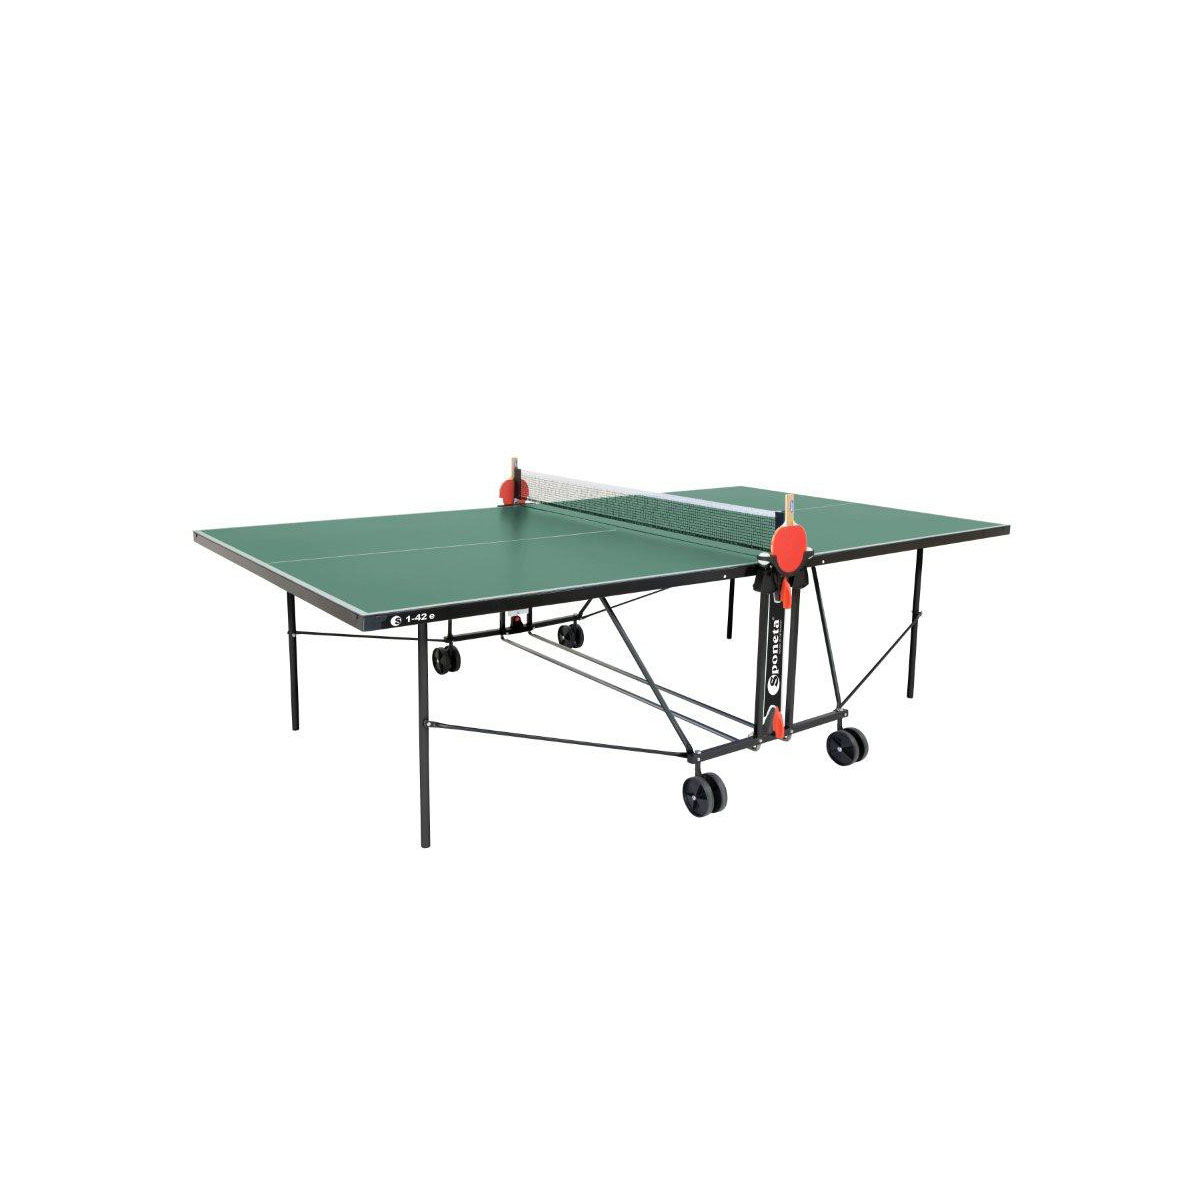 Tisch | Tischtennisplatte Grün Grün wetterfest S Outdoor K000779969 1-42 e | Tischtennis Sponeta